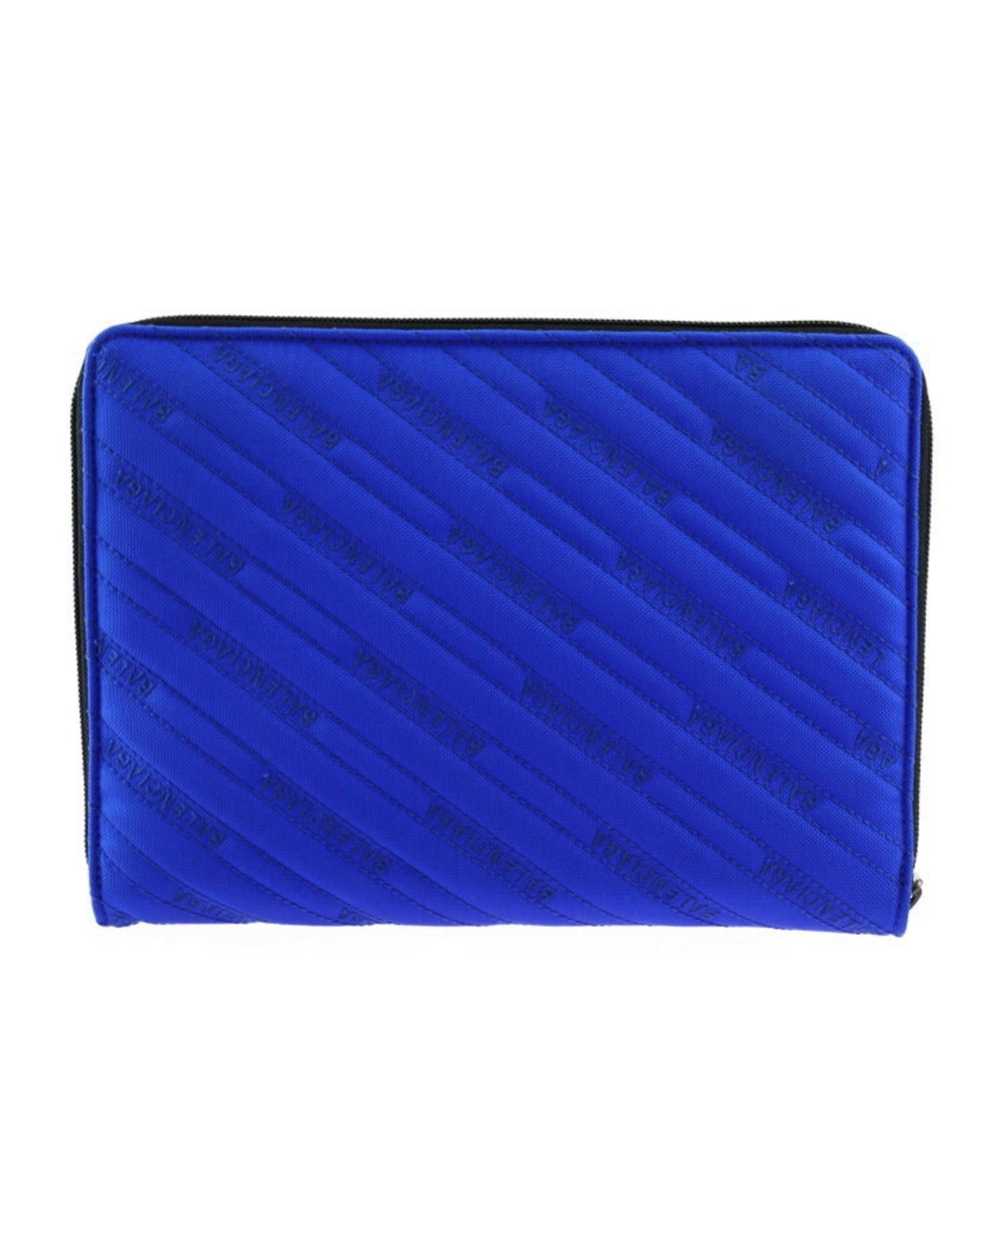 Balenciaga Blue Canvas Clutch Bag - image 3